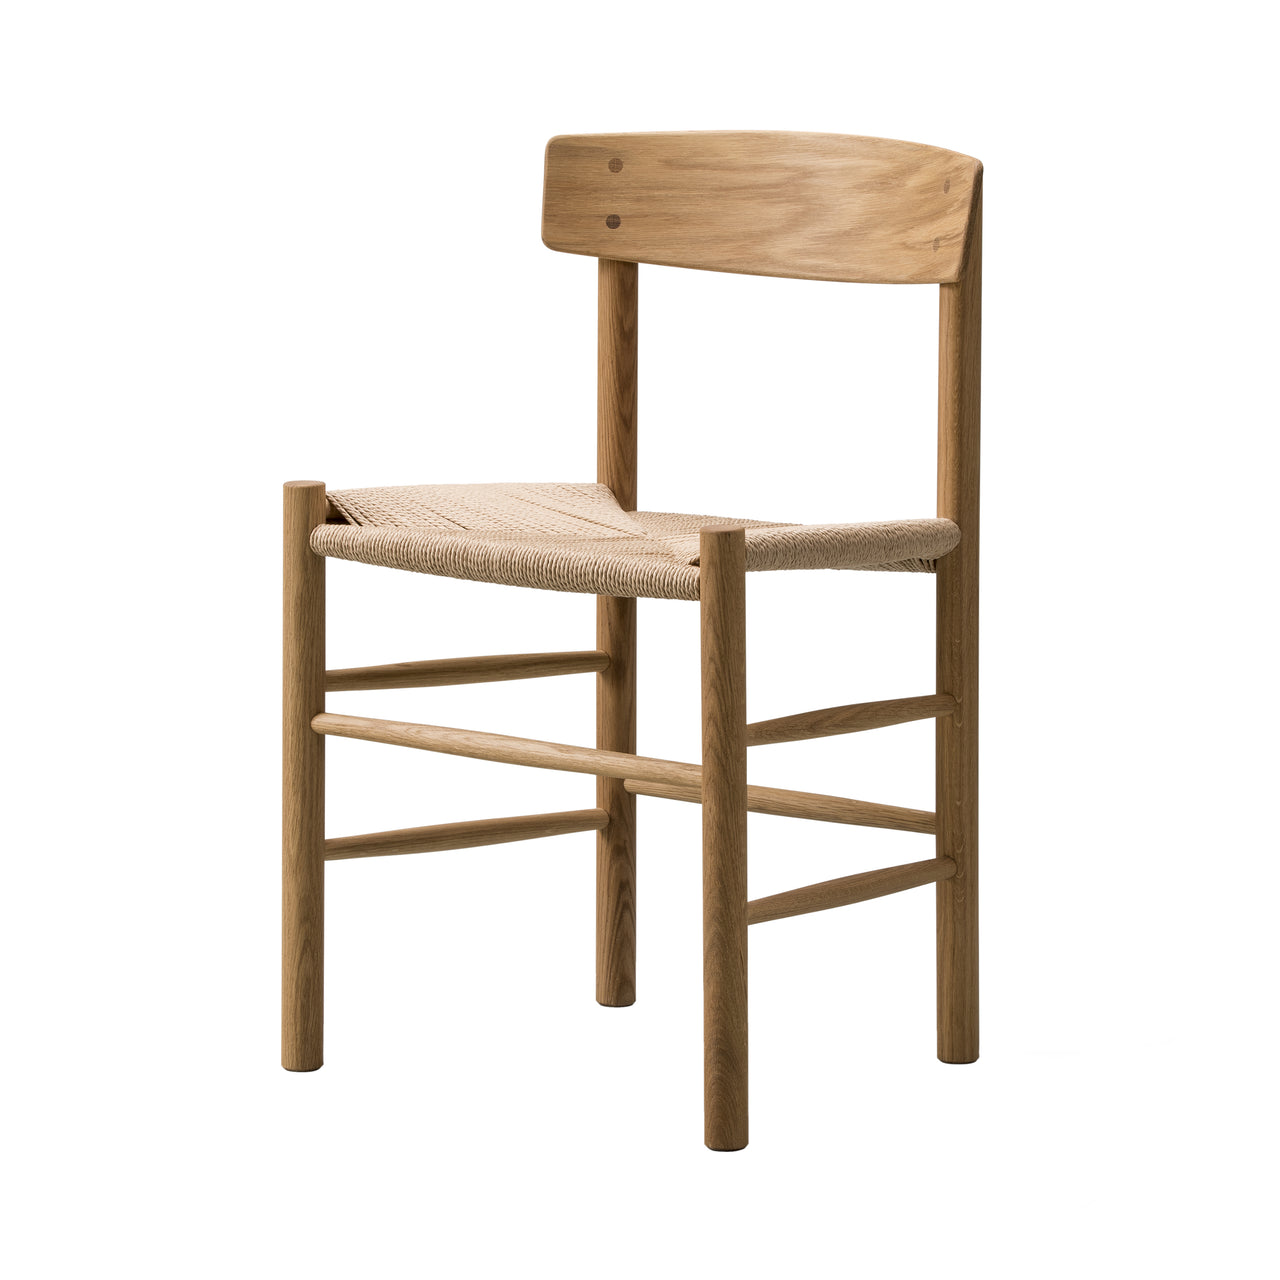 J39 Mogensen Chair: Oiled Oak + Natural